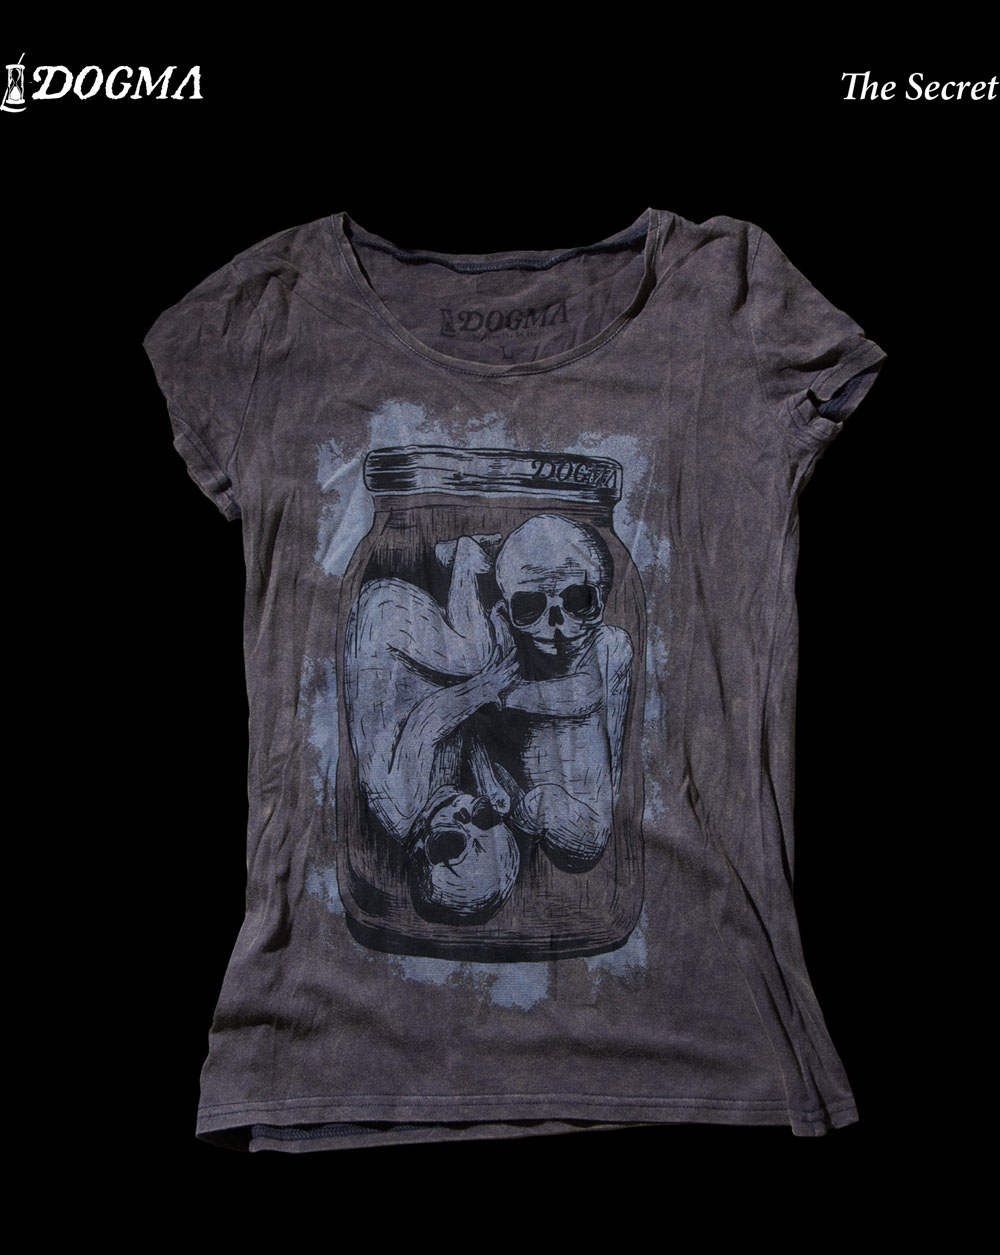 babies Dogma dark art skull draw t-shirts poster